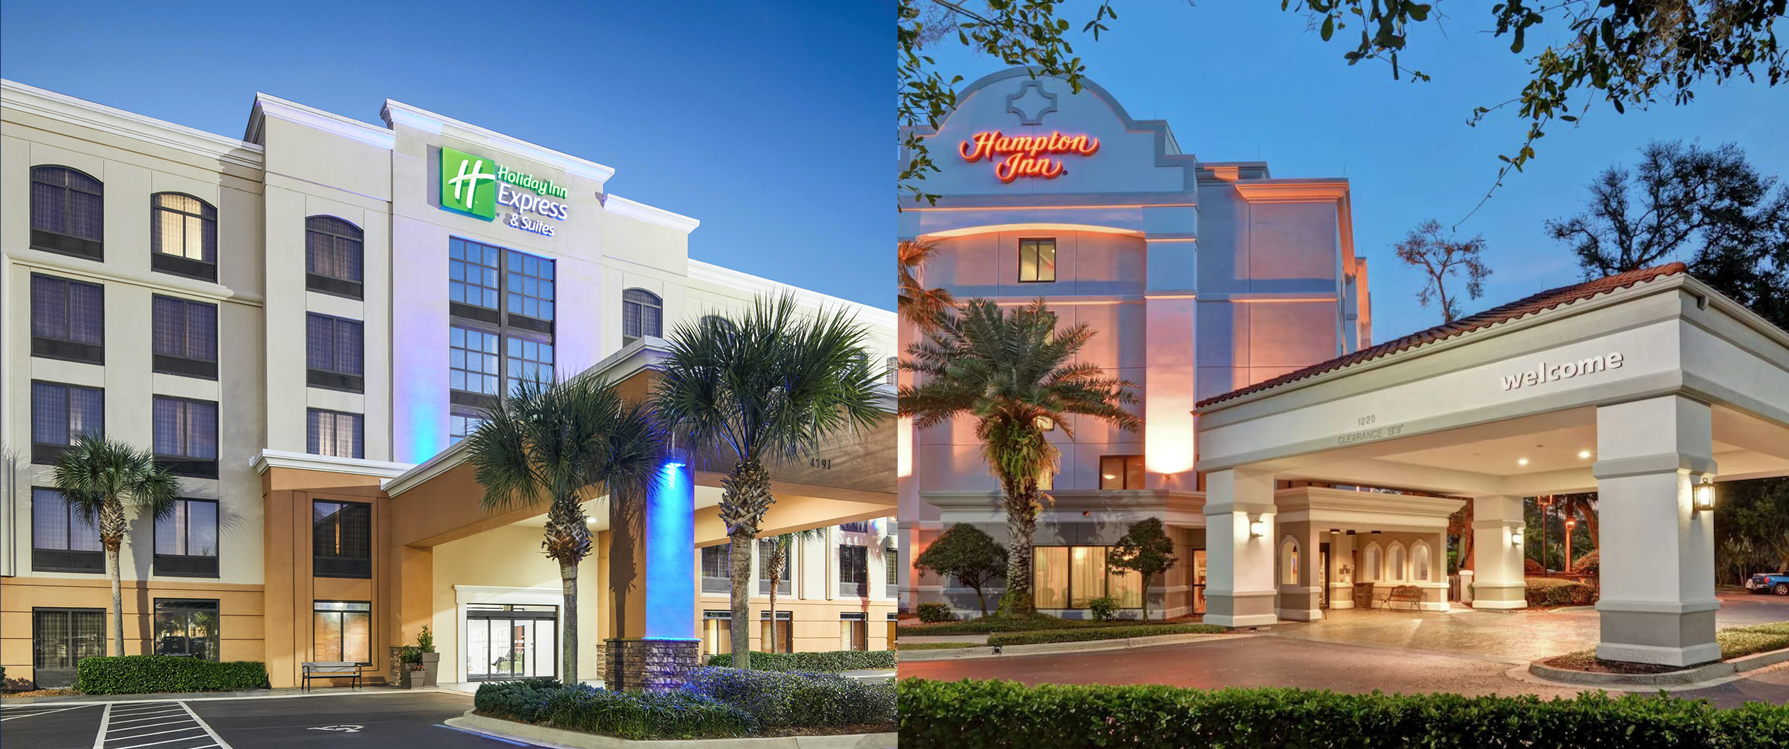 Marcus & Millichap arranges sale of two Jacksonville Hotels